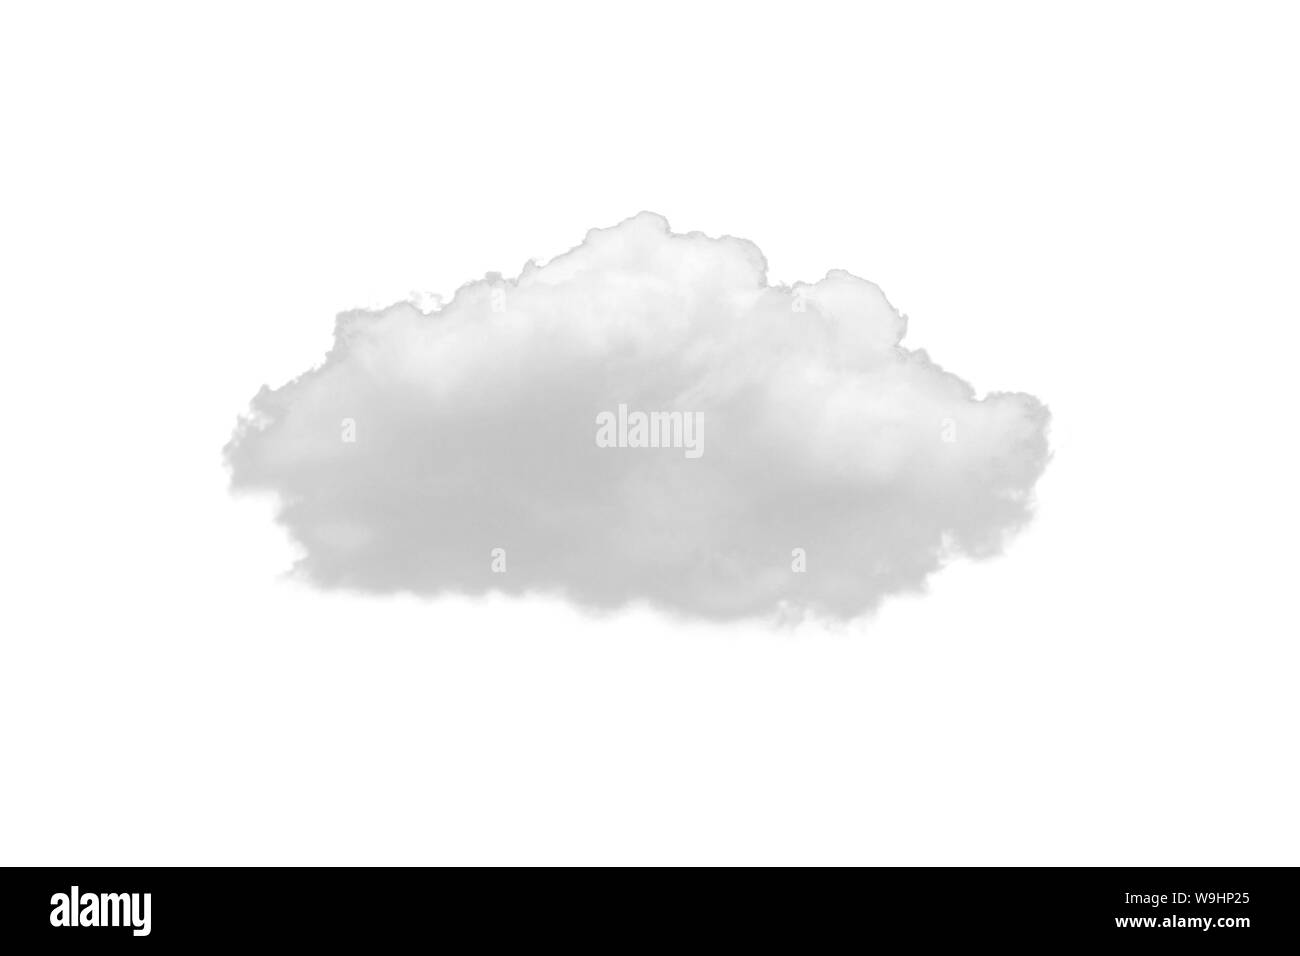 Natur einzelne weiße Wolke auf weißem Hintergrund. Ausschnitt Wolken element Design für multi Zweck verwenden. Stockfoto